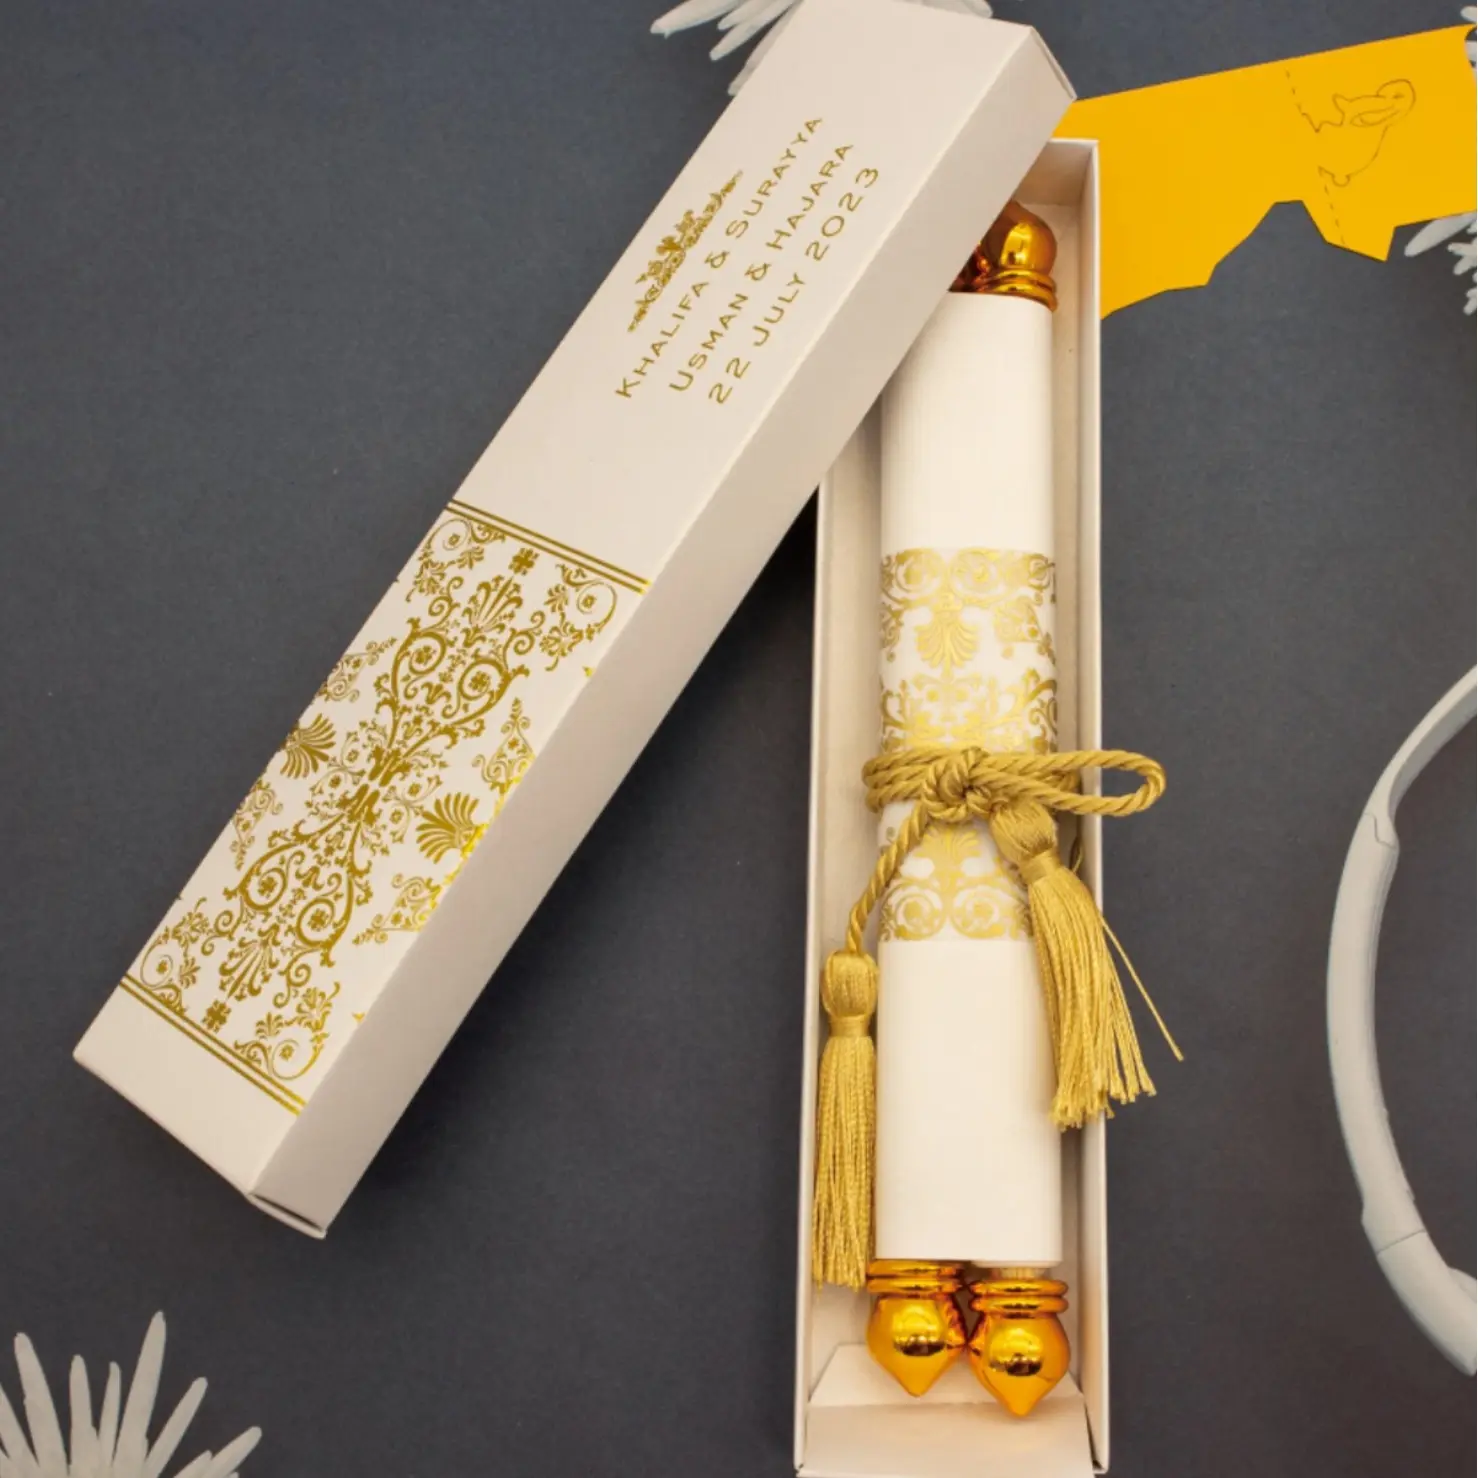 Design creativo in stile reale lamina d'oro che timbra scatola unica di imballaggio con nappine carta rotolo di carta biglietti d'invito di nozze